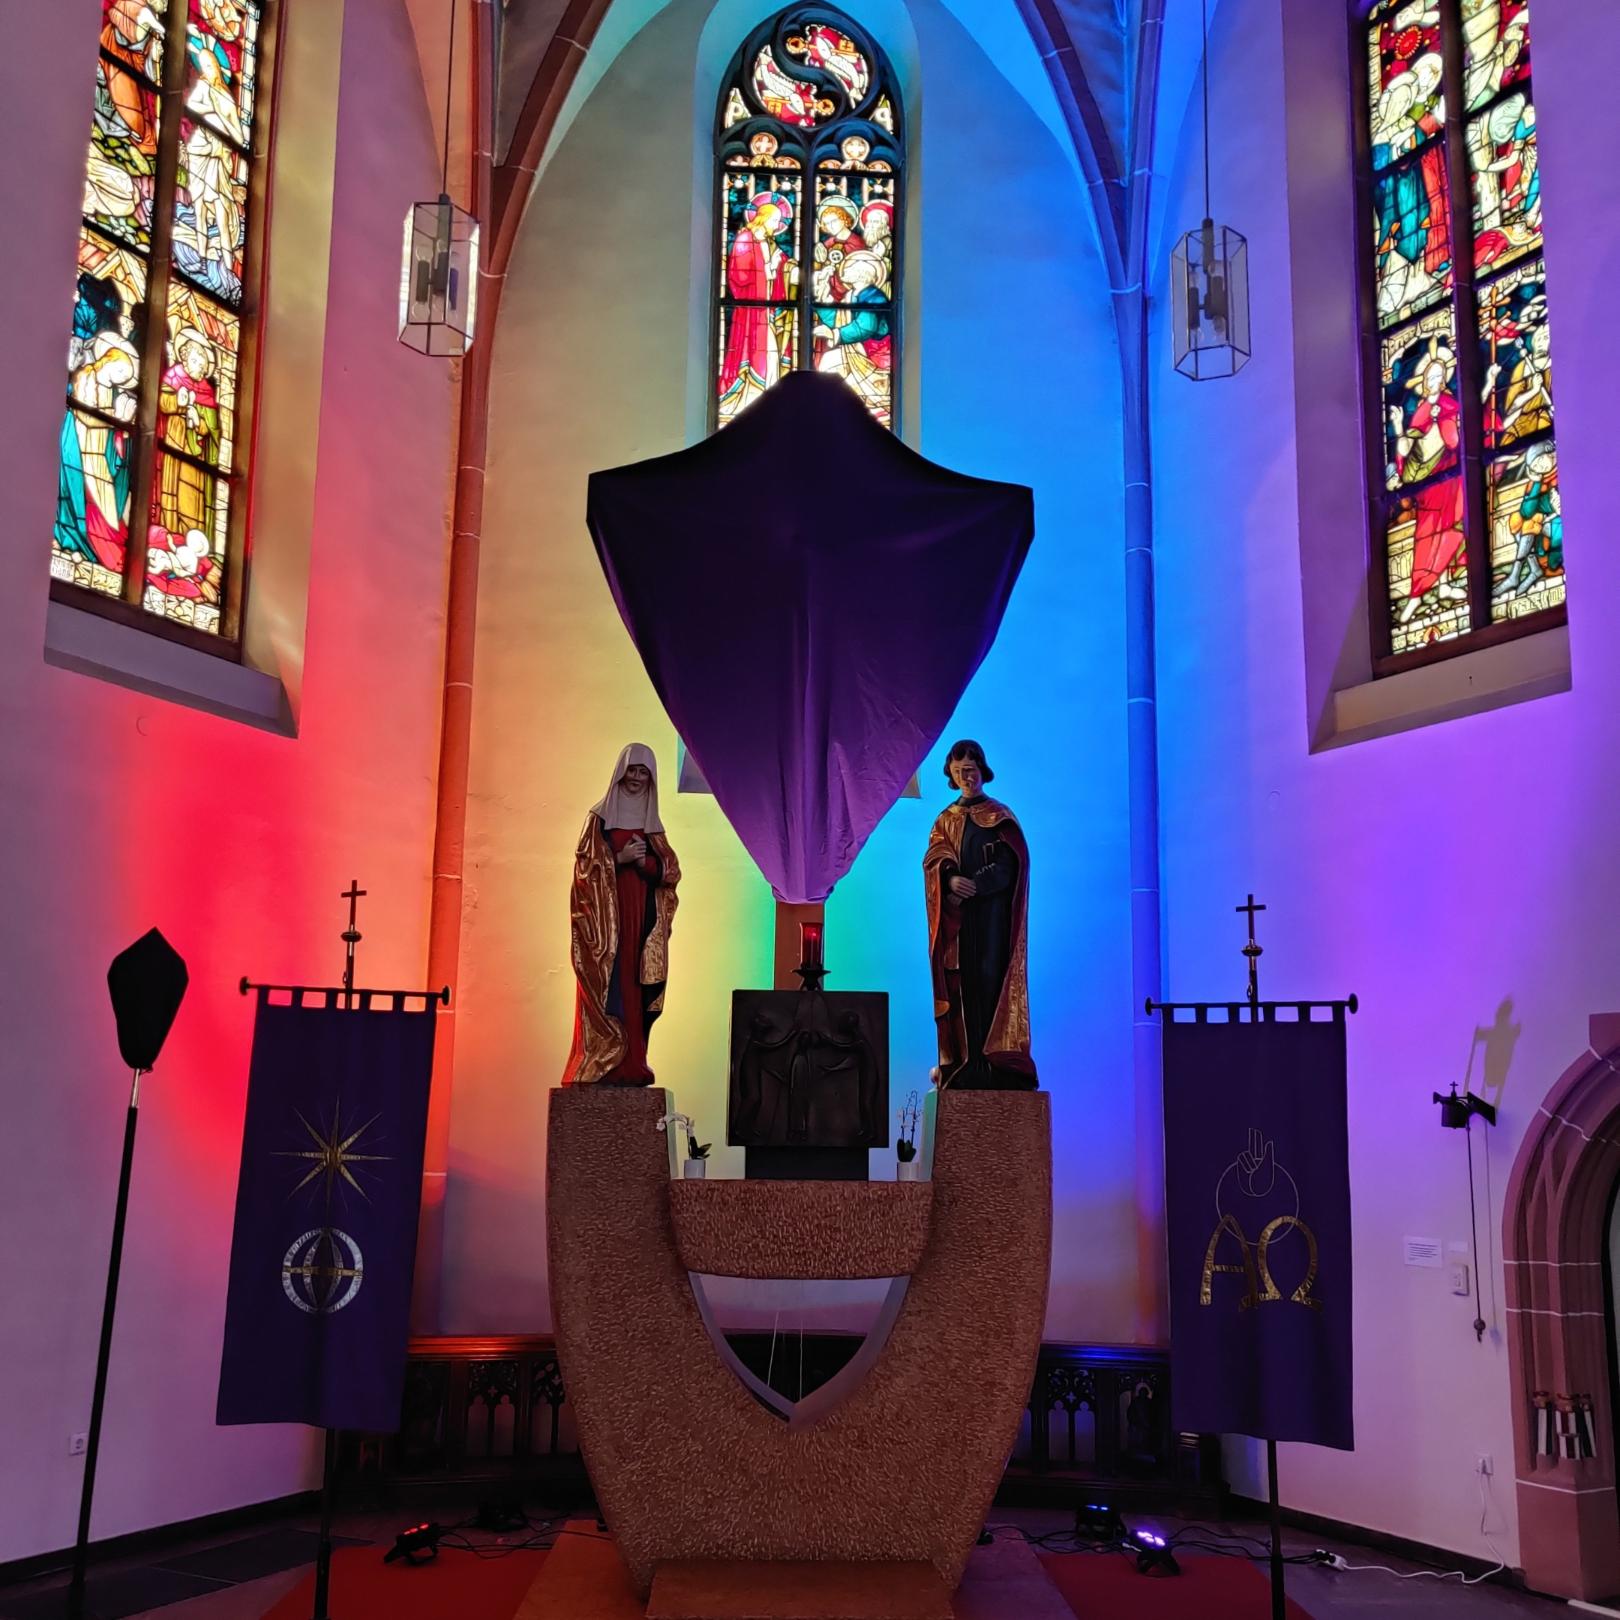 Regenbogenbeleuchtung in unserer Pfarrkirche (c) Pfarrei St. Bartholomäus Groß-Zimmern